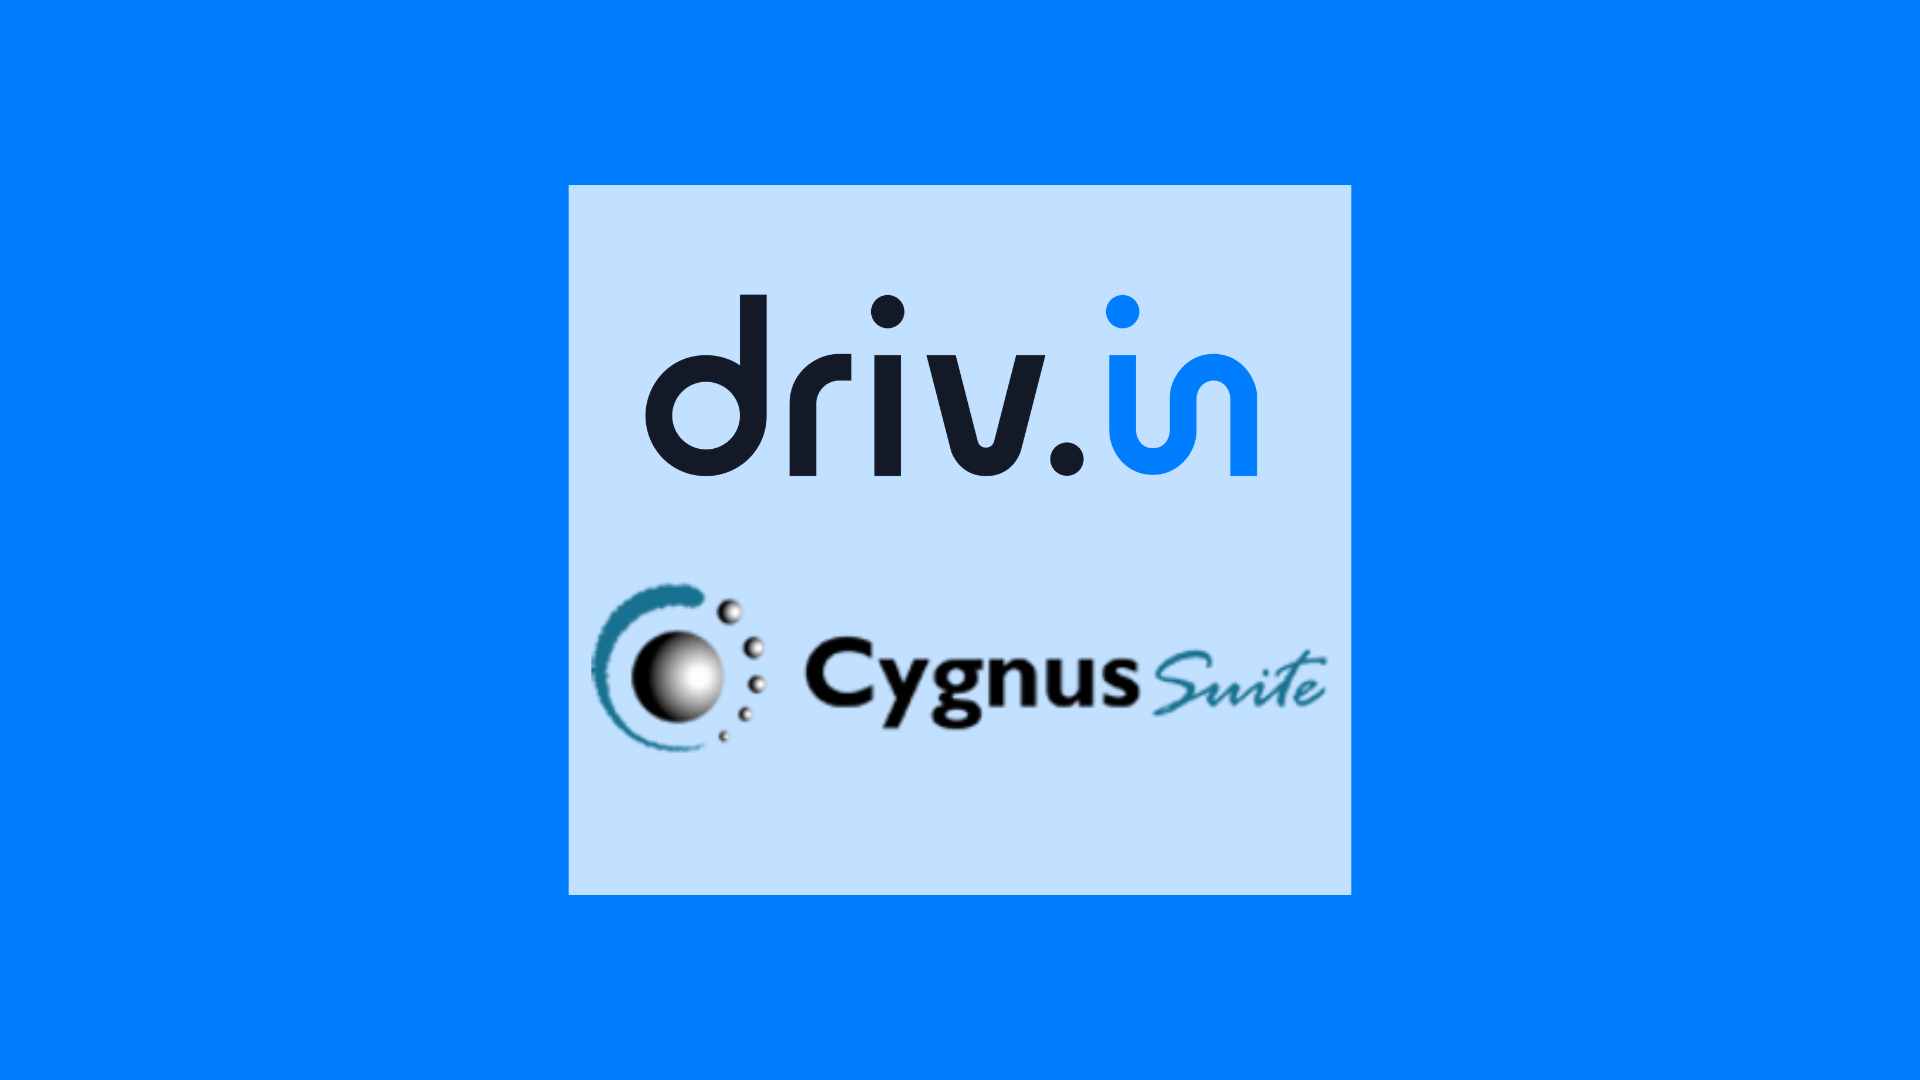 Drivin Cygnus Suite